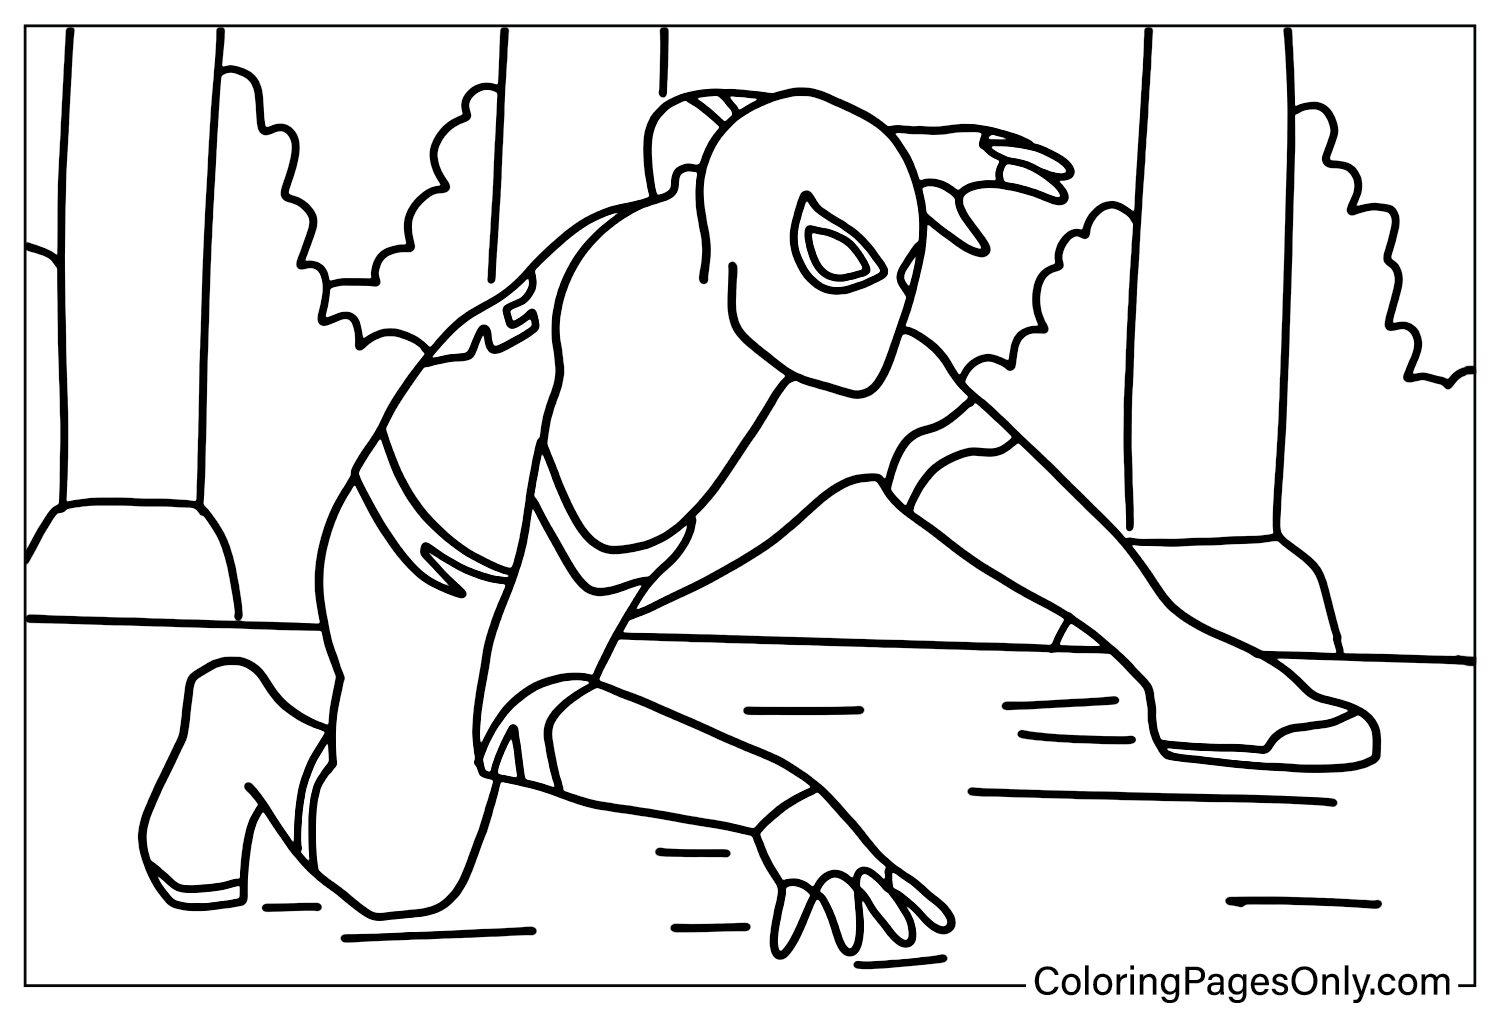 Spider-Man lejos de casa Página para colorear gratis de Spider-Man lejos de casa